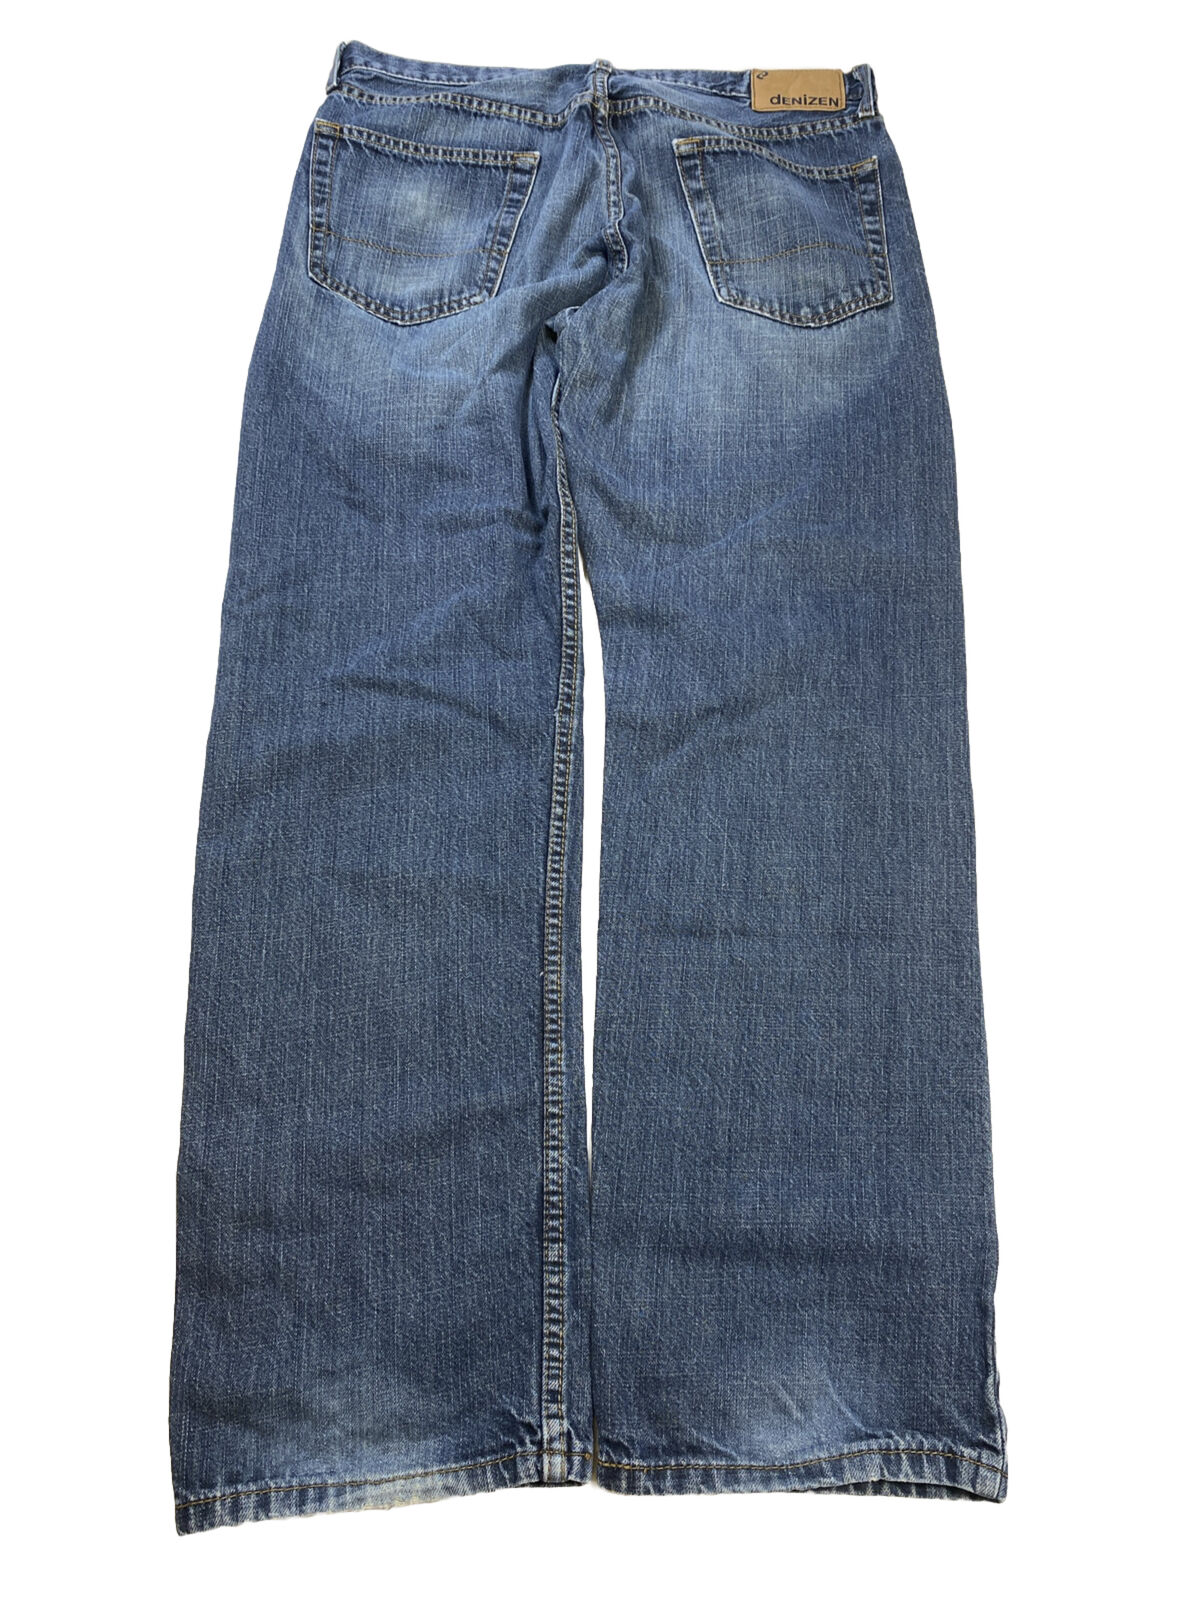 Denizen Men's Dark Wash 236 Regular Fit Straight Leg Jeans - 36x32